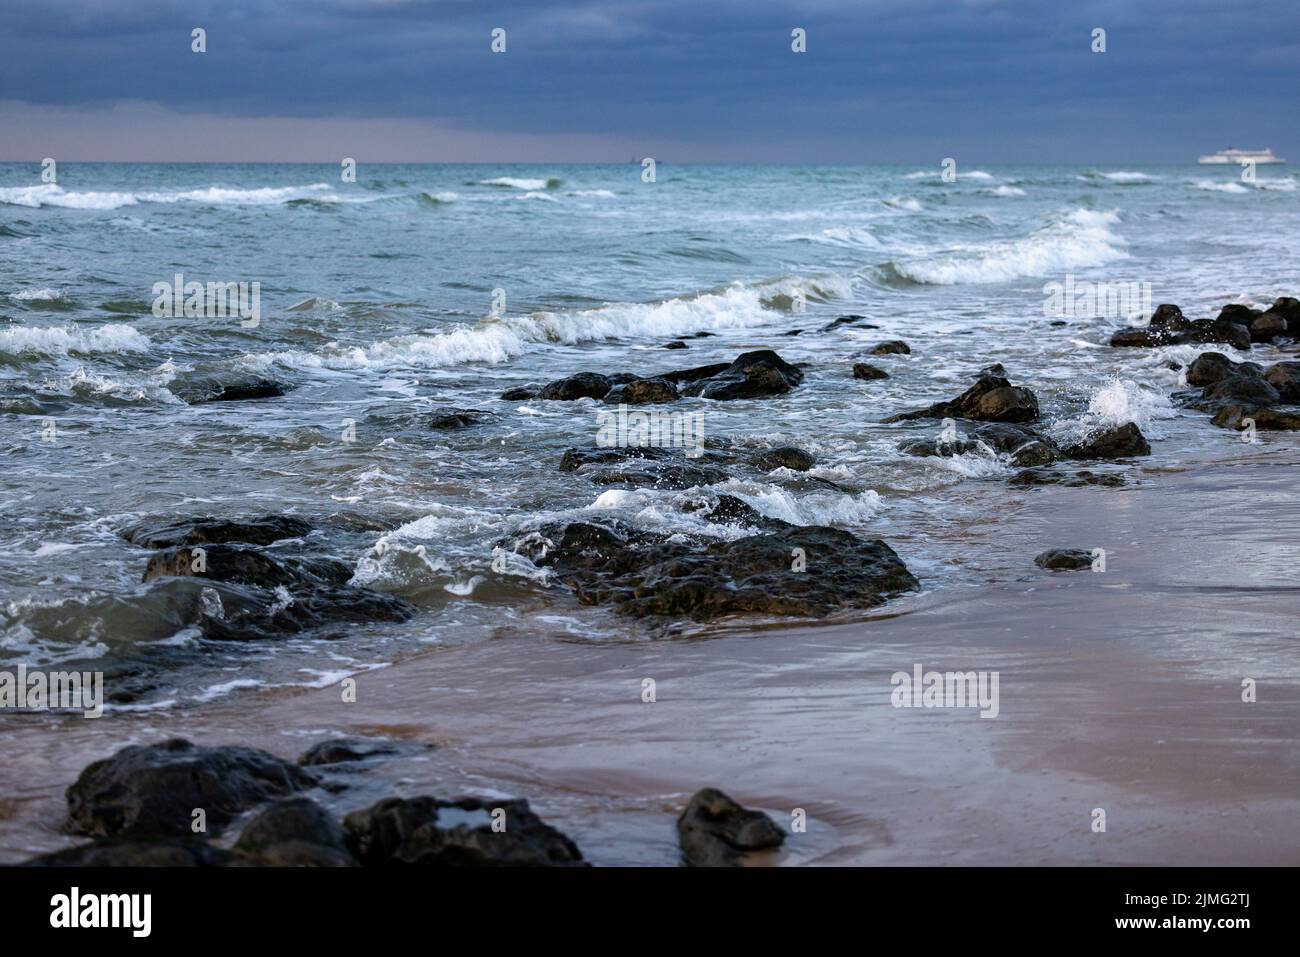 Les vagues de mer frappent des rochers sur la plage avec de l'eau de mer turquoise causant des éclaboussures d'eau. Paysage marin de falaise de roche incroyable en français Banque D'Images